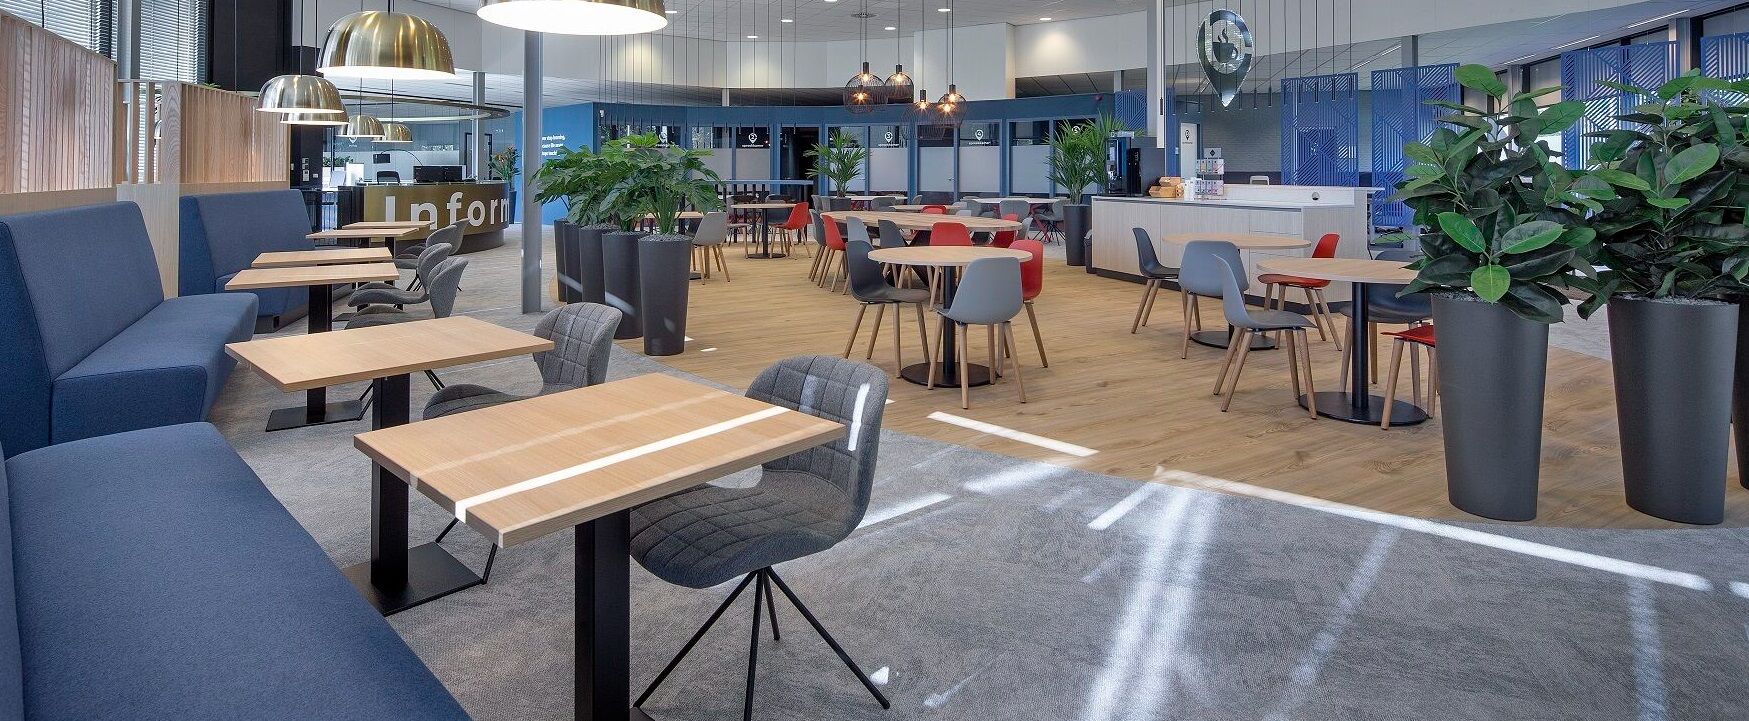 Het Business Center aan De Vesting 11 in Steenwijk.